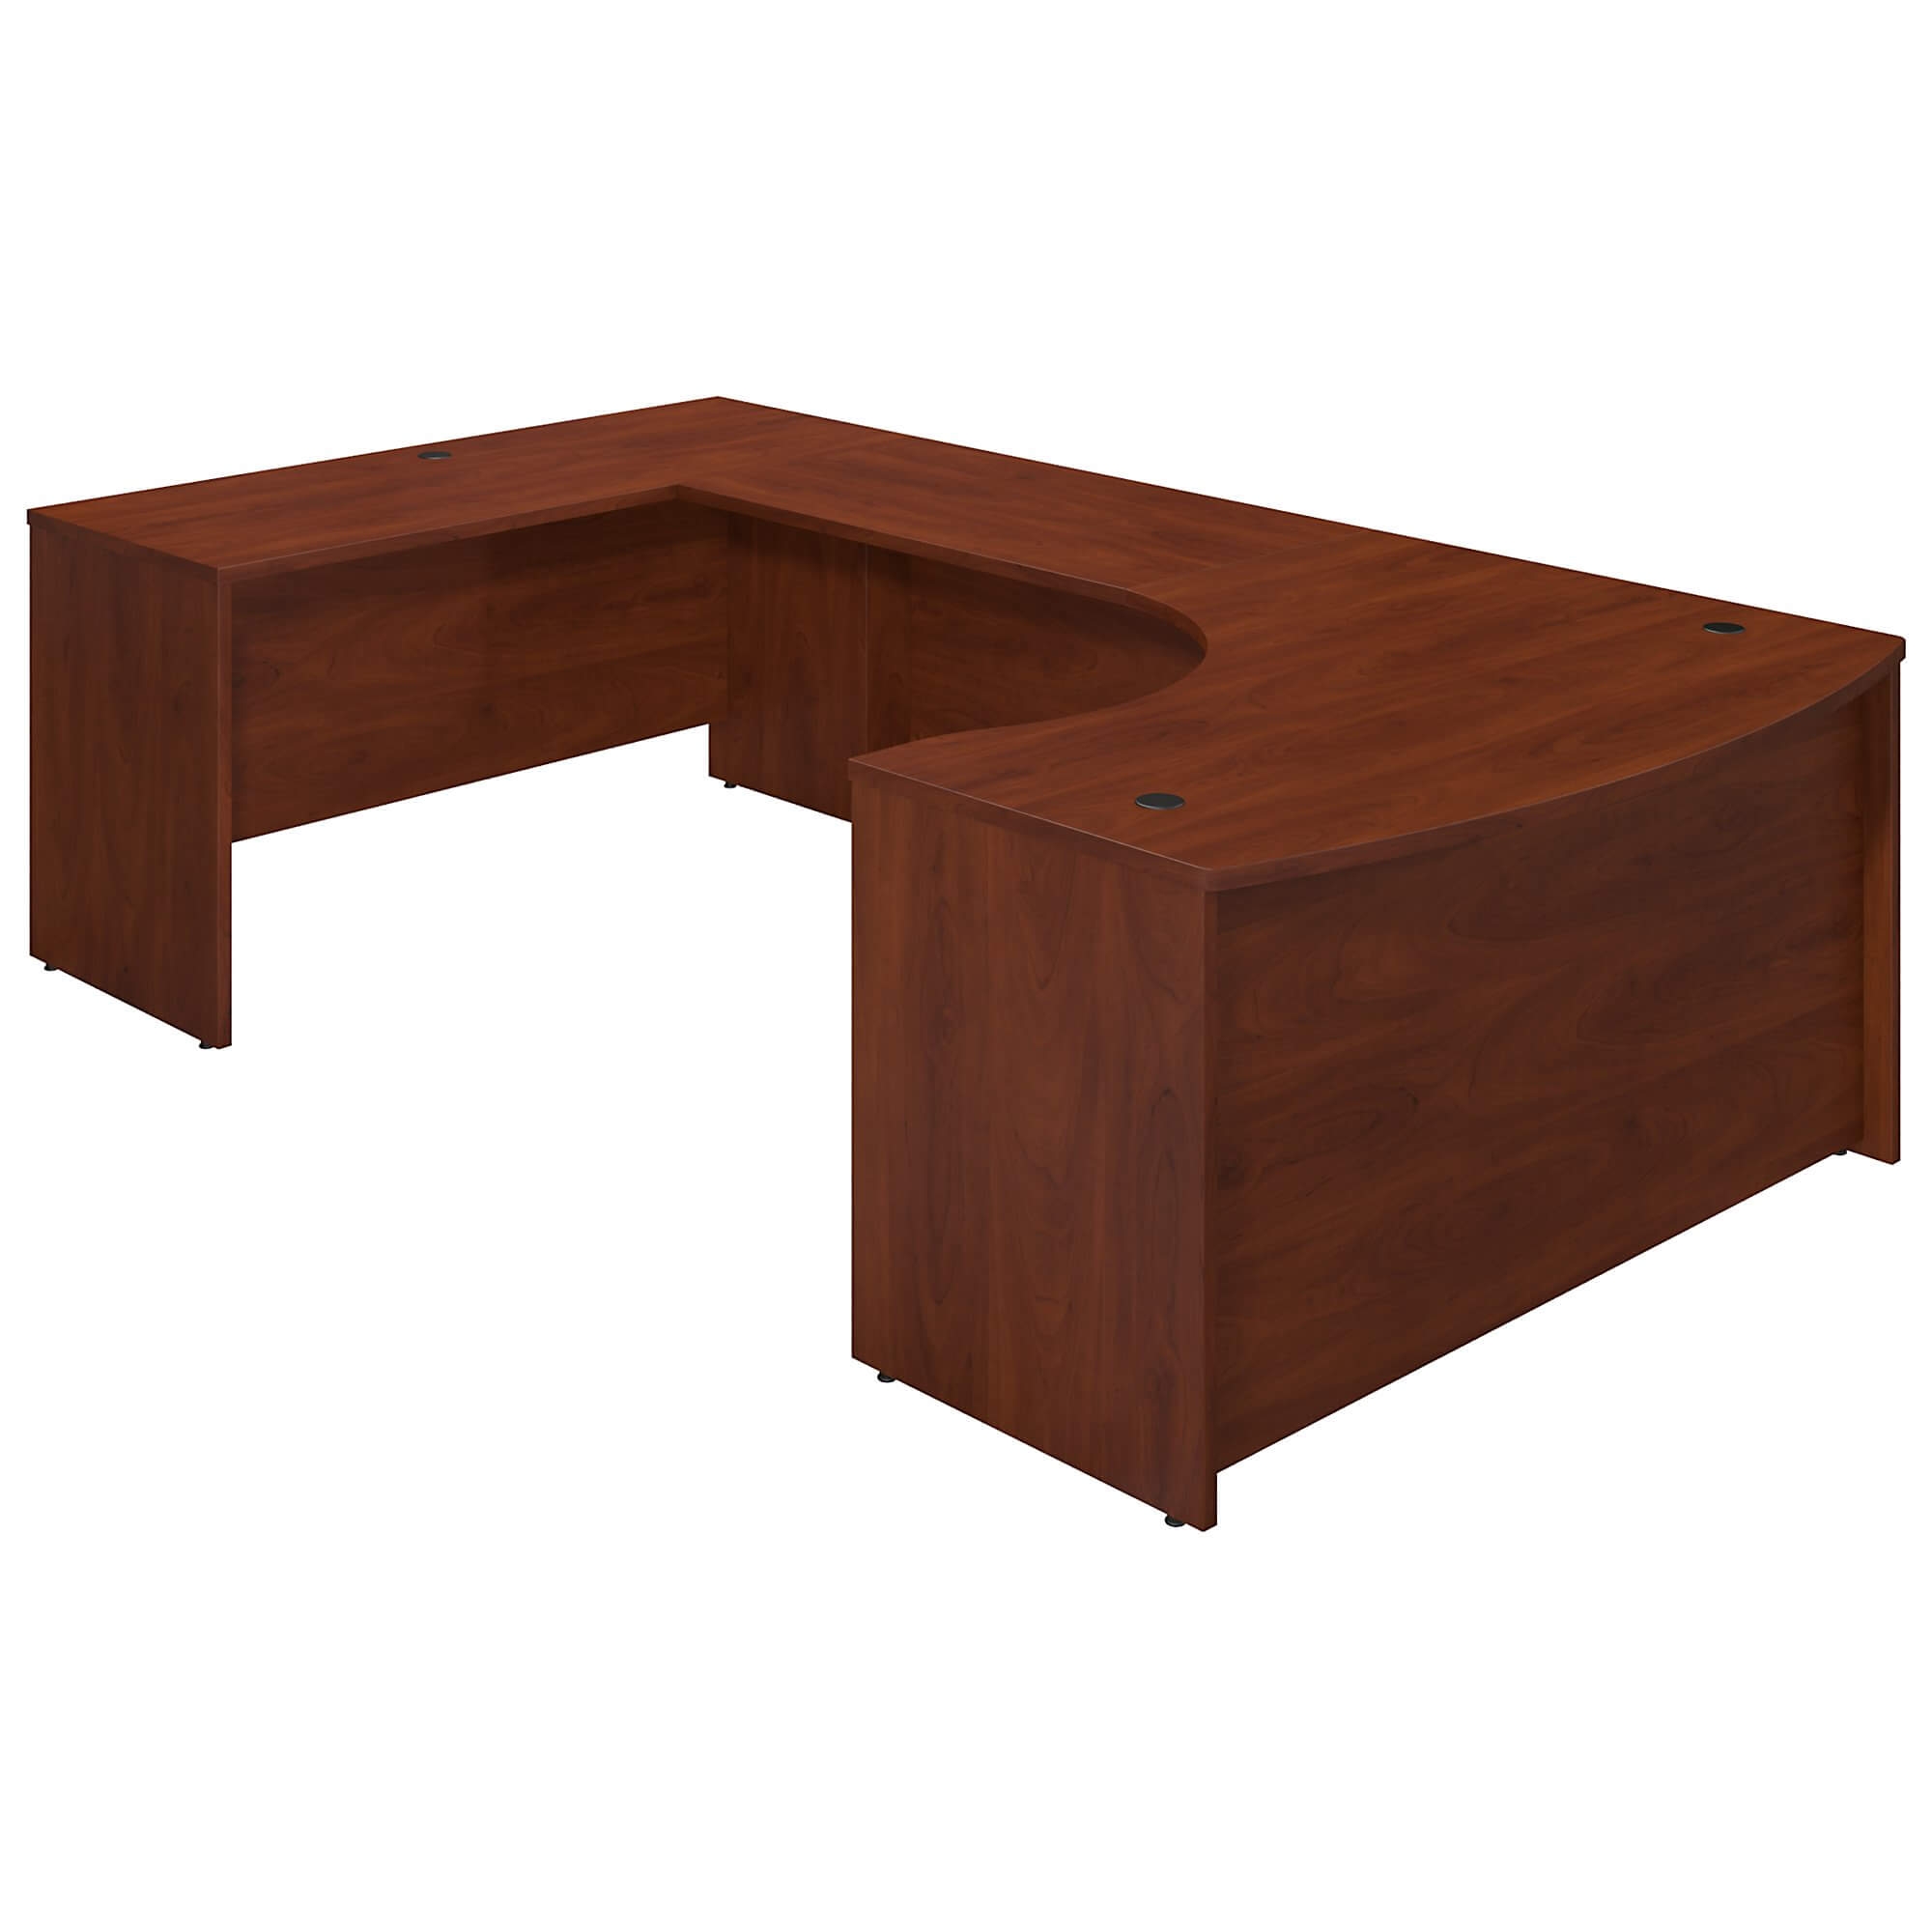 U shaped desk wood computer desk